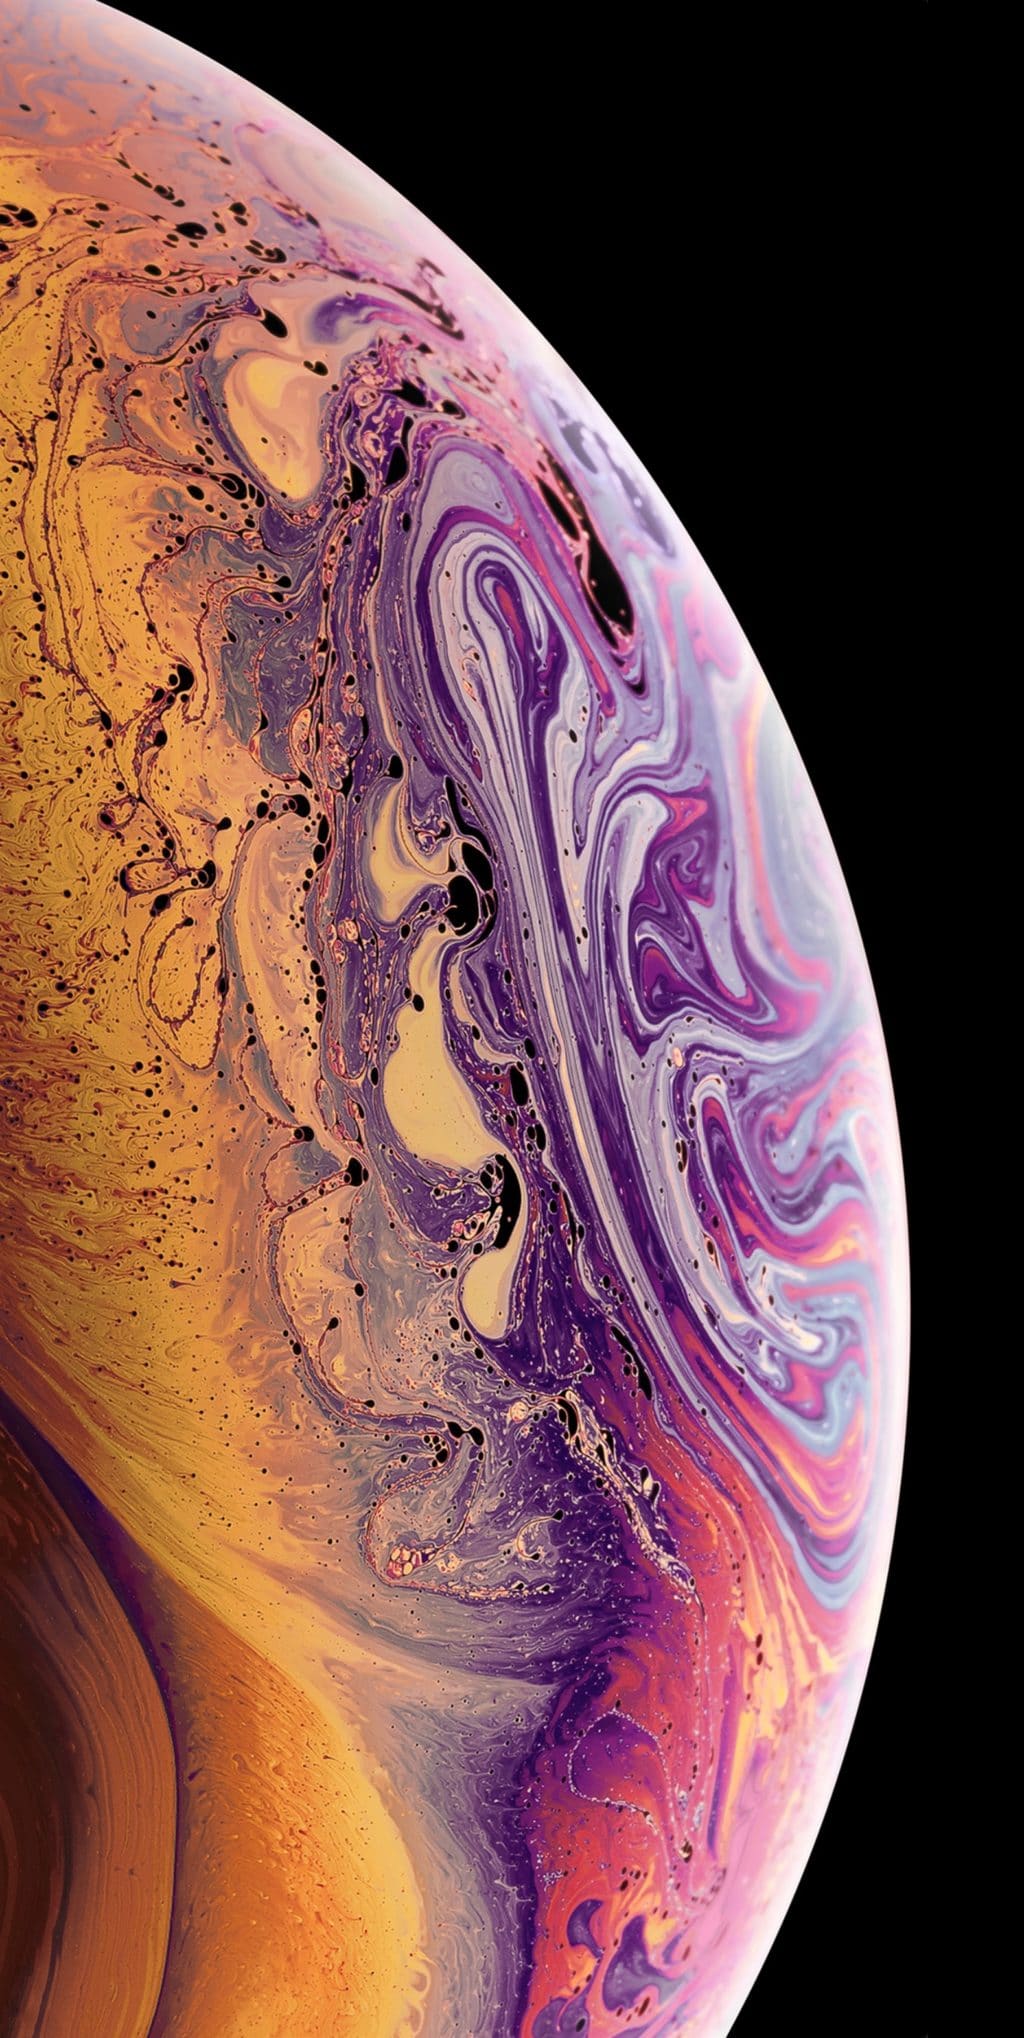 New iPhone XS Wallpapers - Top Những Hình Ảnh Đẹp